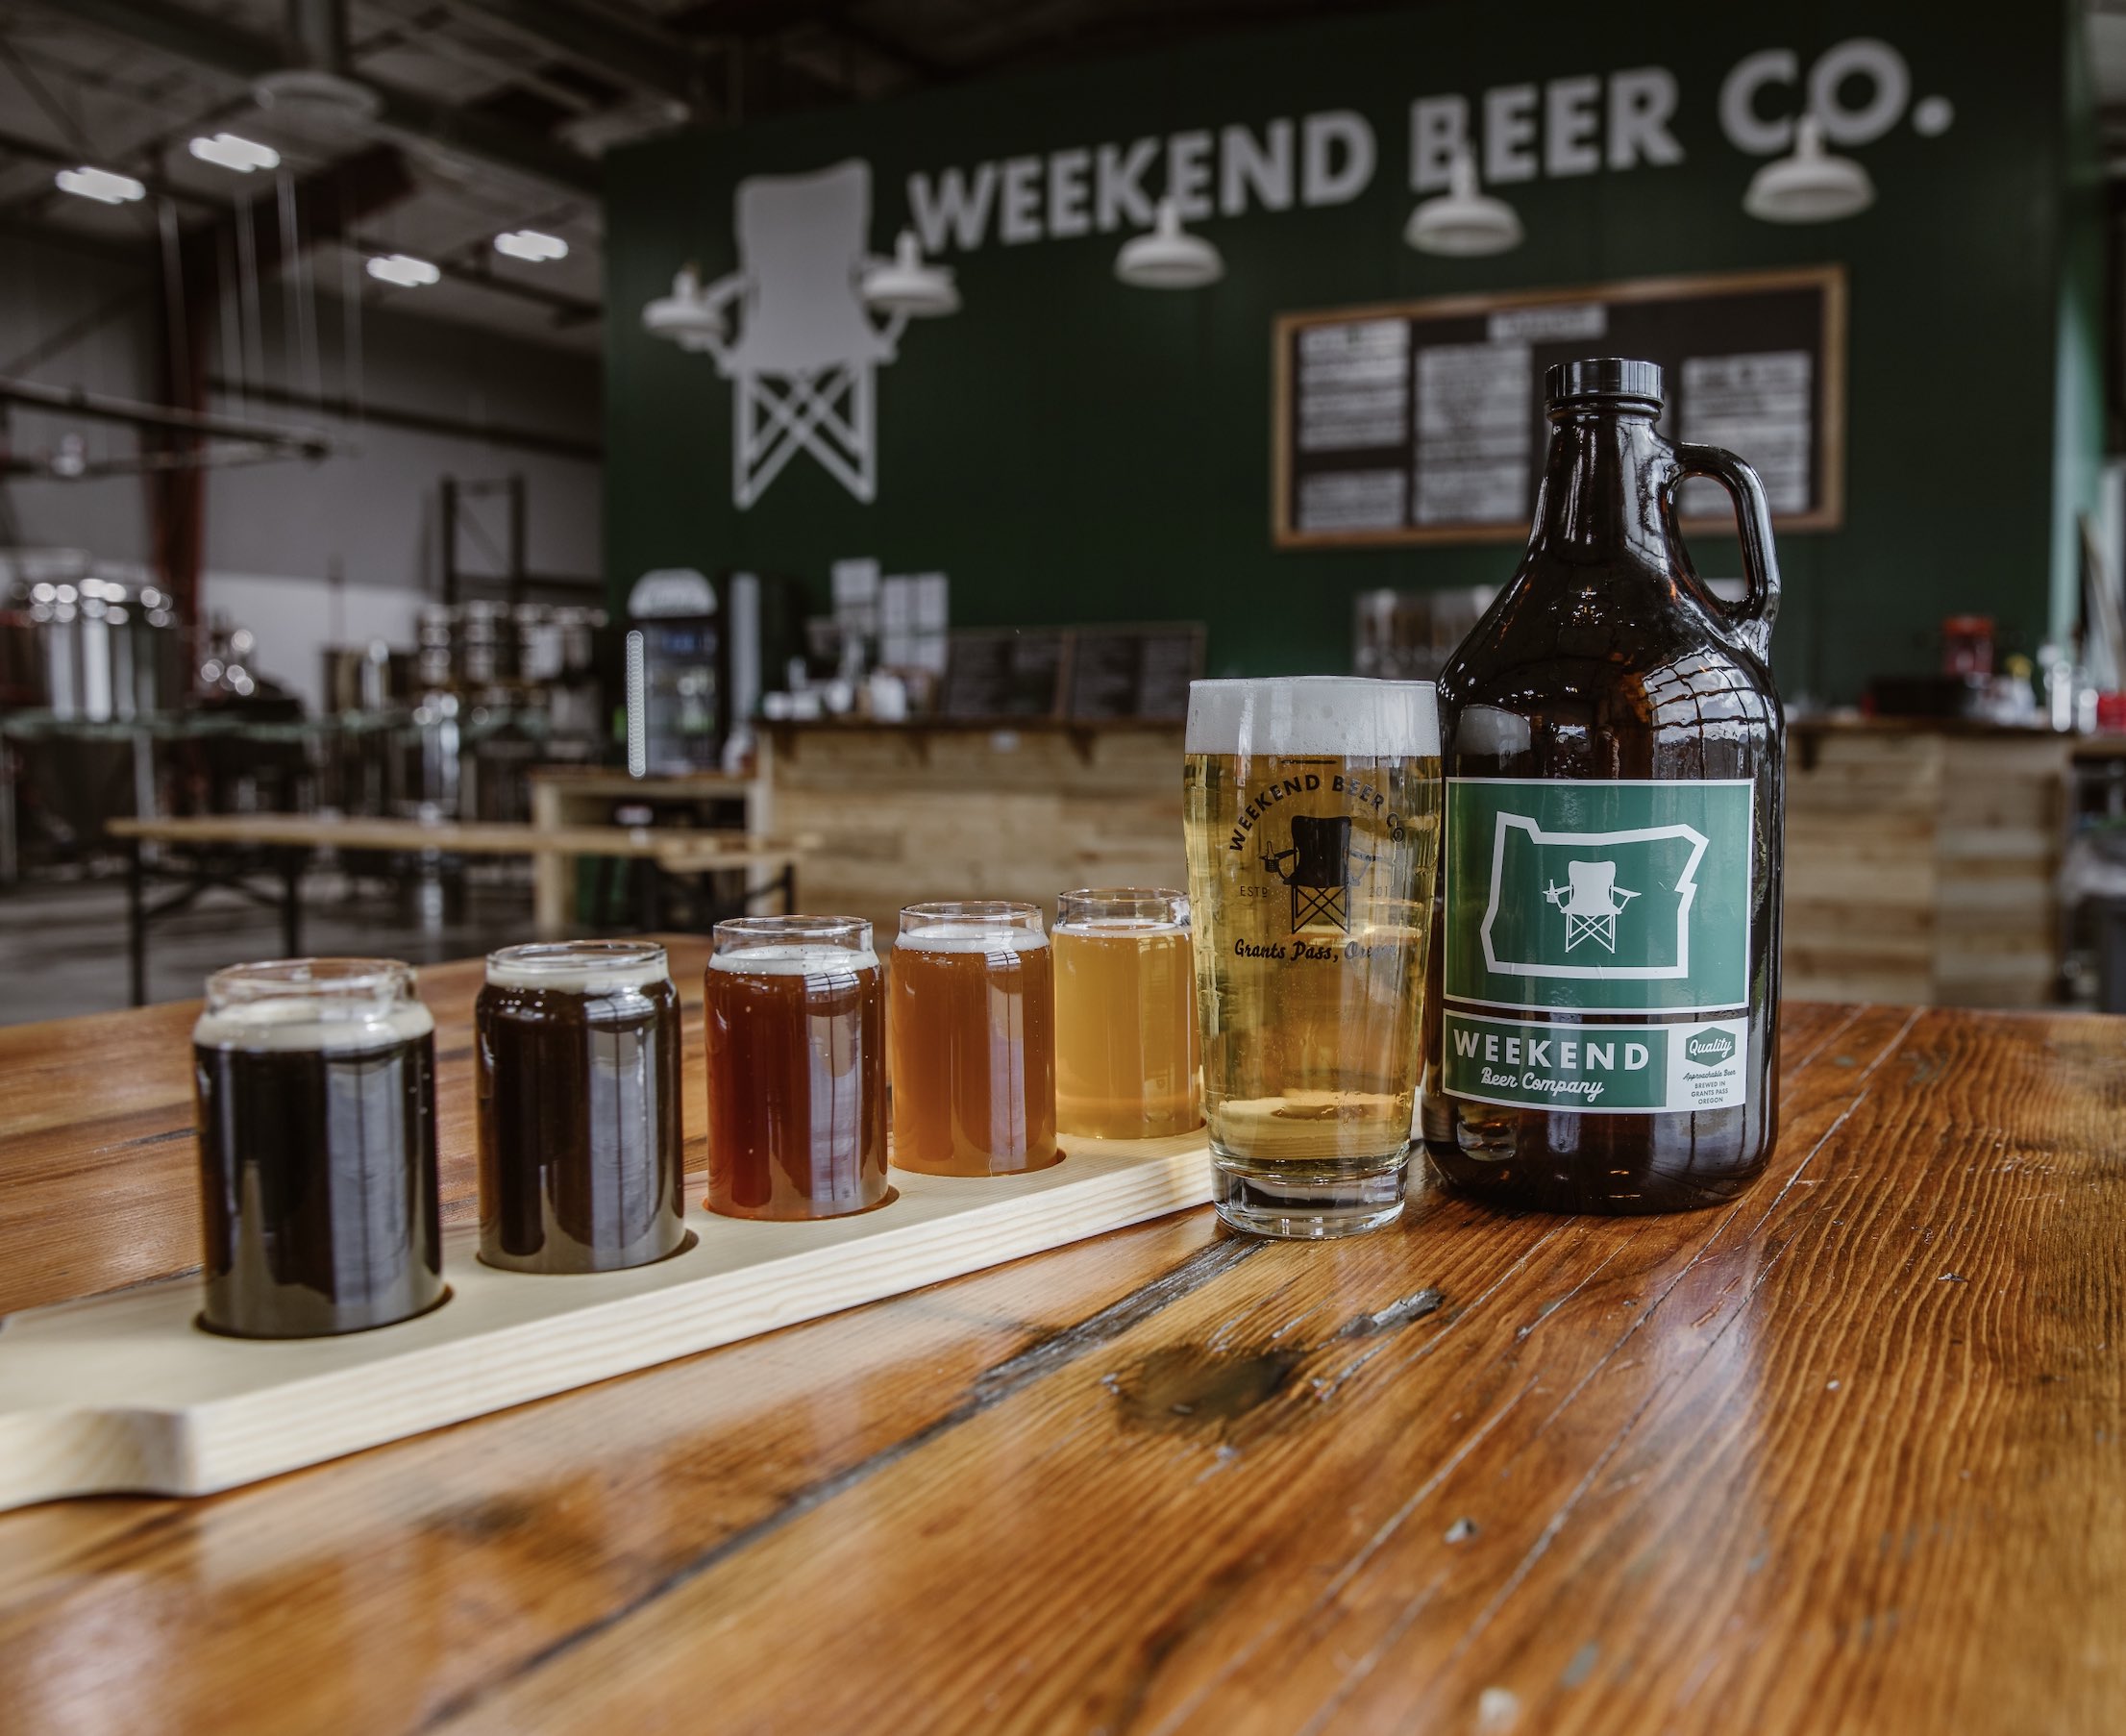 Weekend Beer Flight on table in brewery